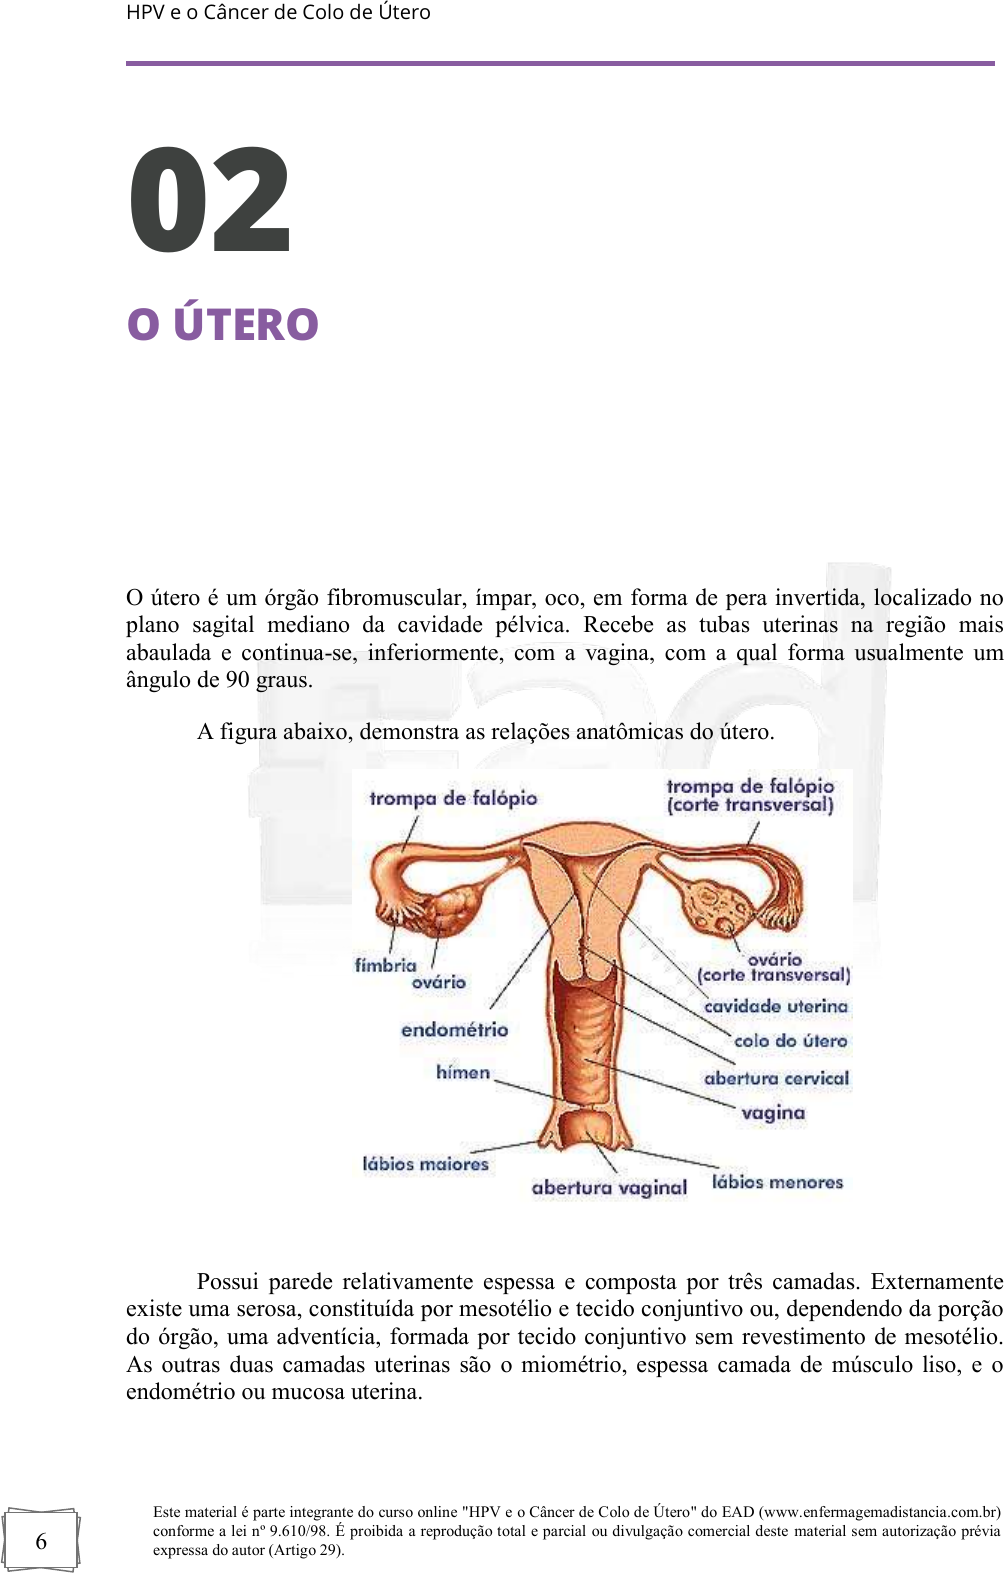 apostila do curso atualizacao em hpv e o cancer de colo de utero